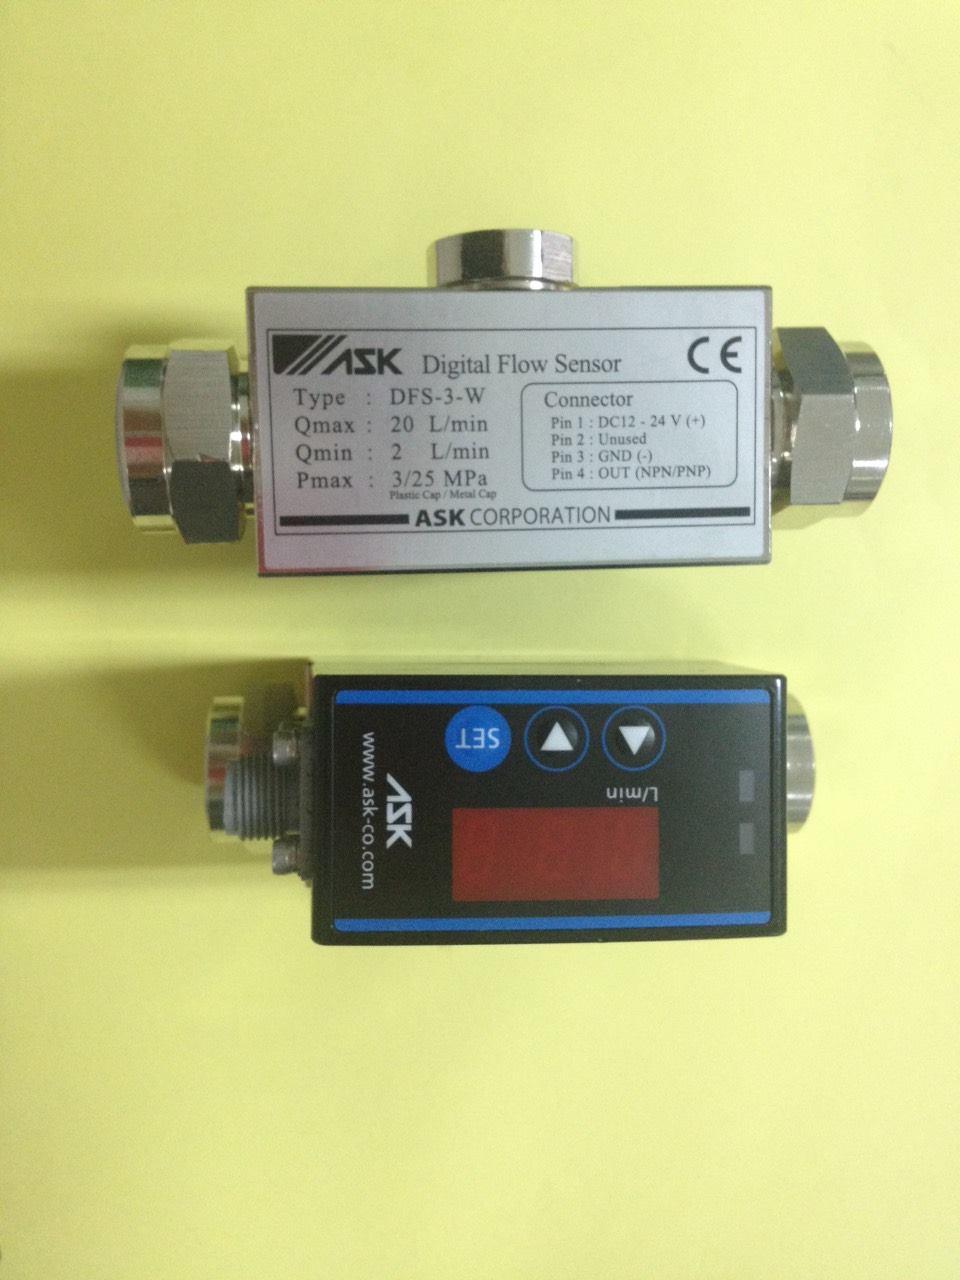 Digital Flow Sensor ASK,Digital Flow Sensor ASK, Flow Sensor, DFS,ASK,Instruments and Controls/Sensors